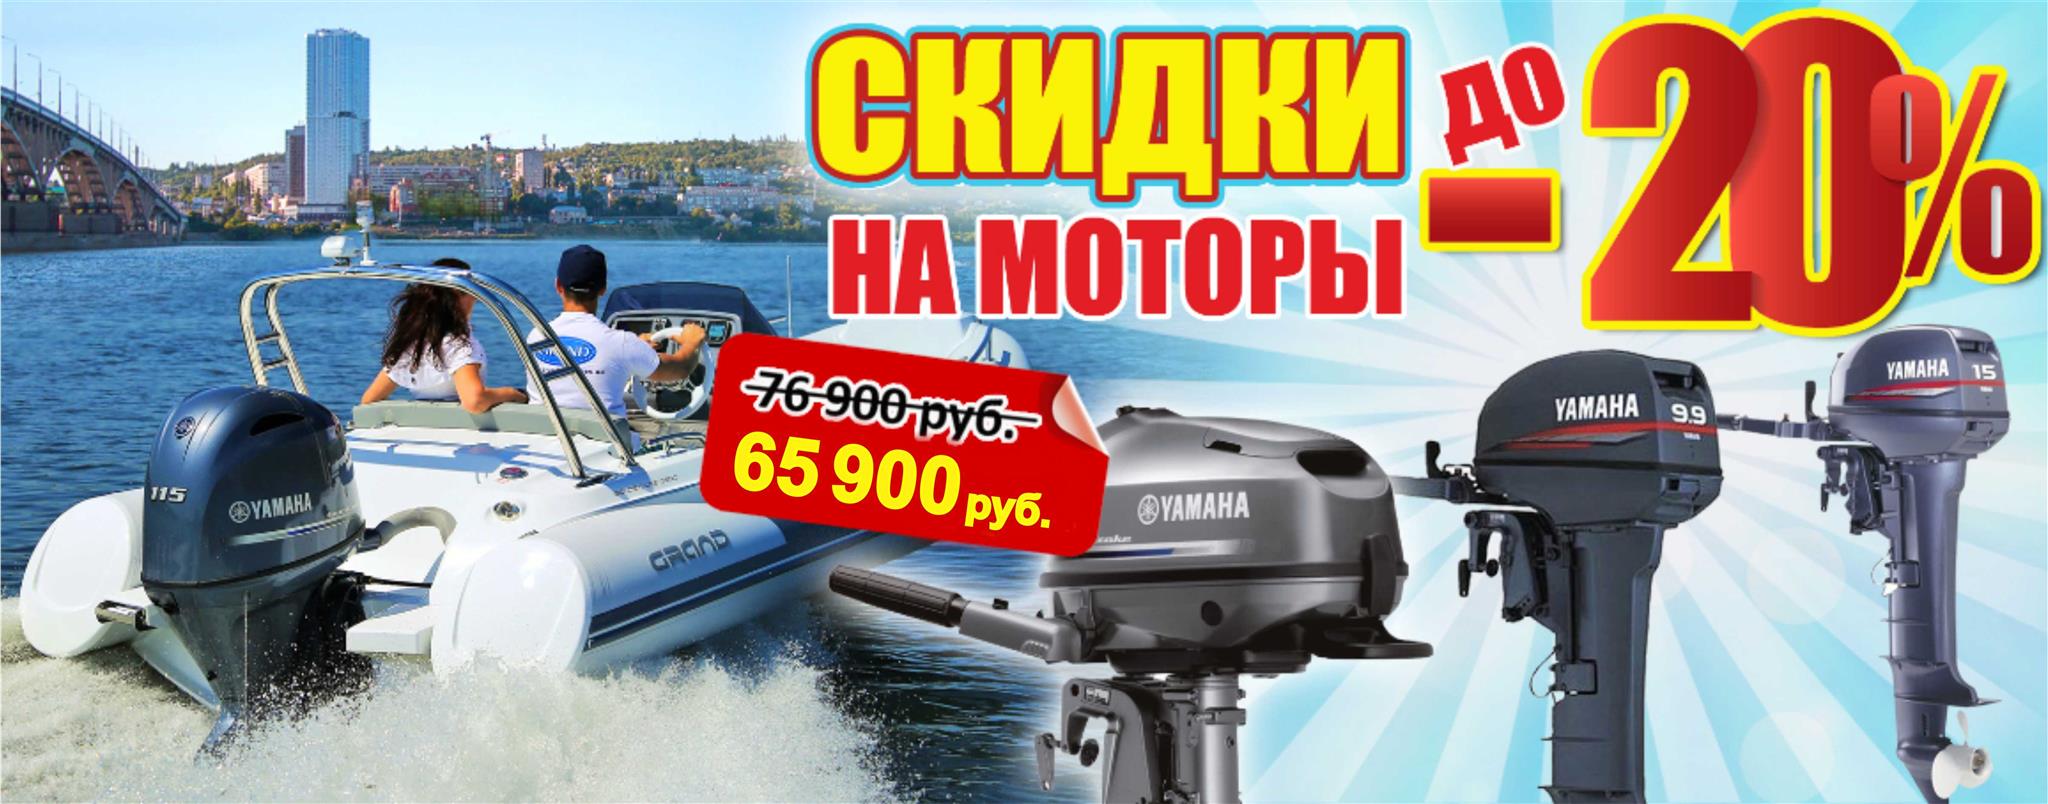 Акции —Завершенные акции —Скидки на лодочные моторы Yamaha до 20%